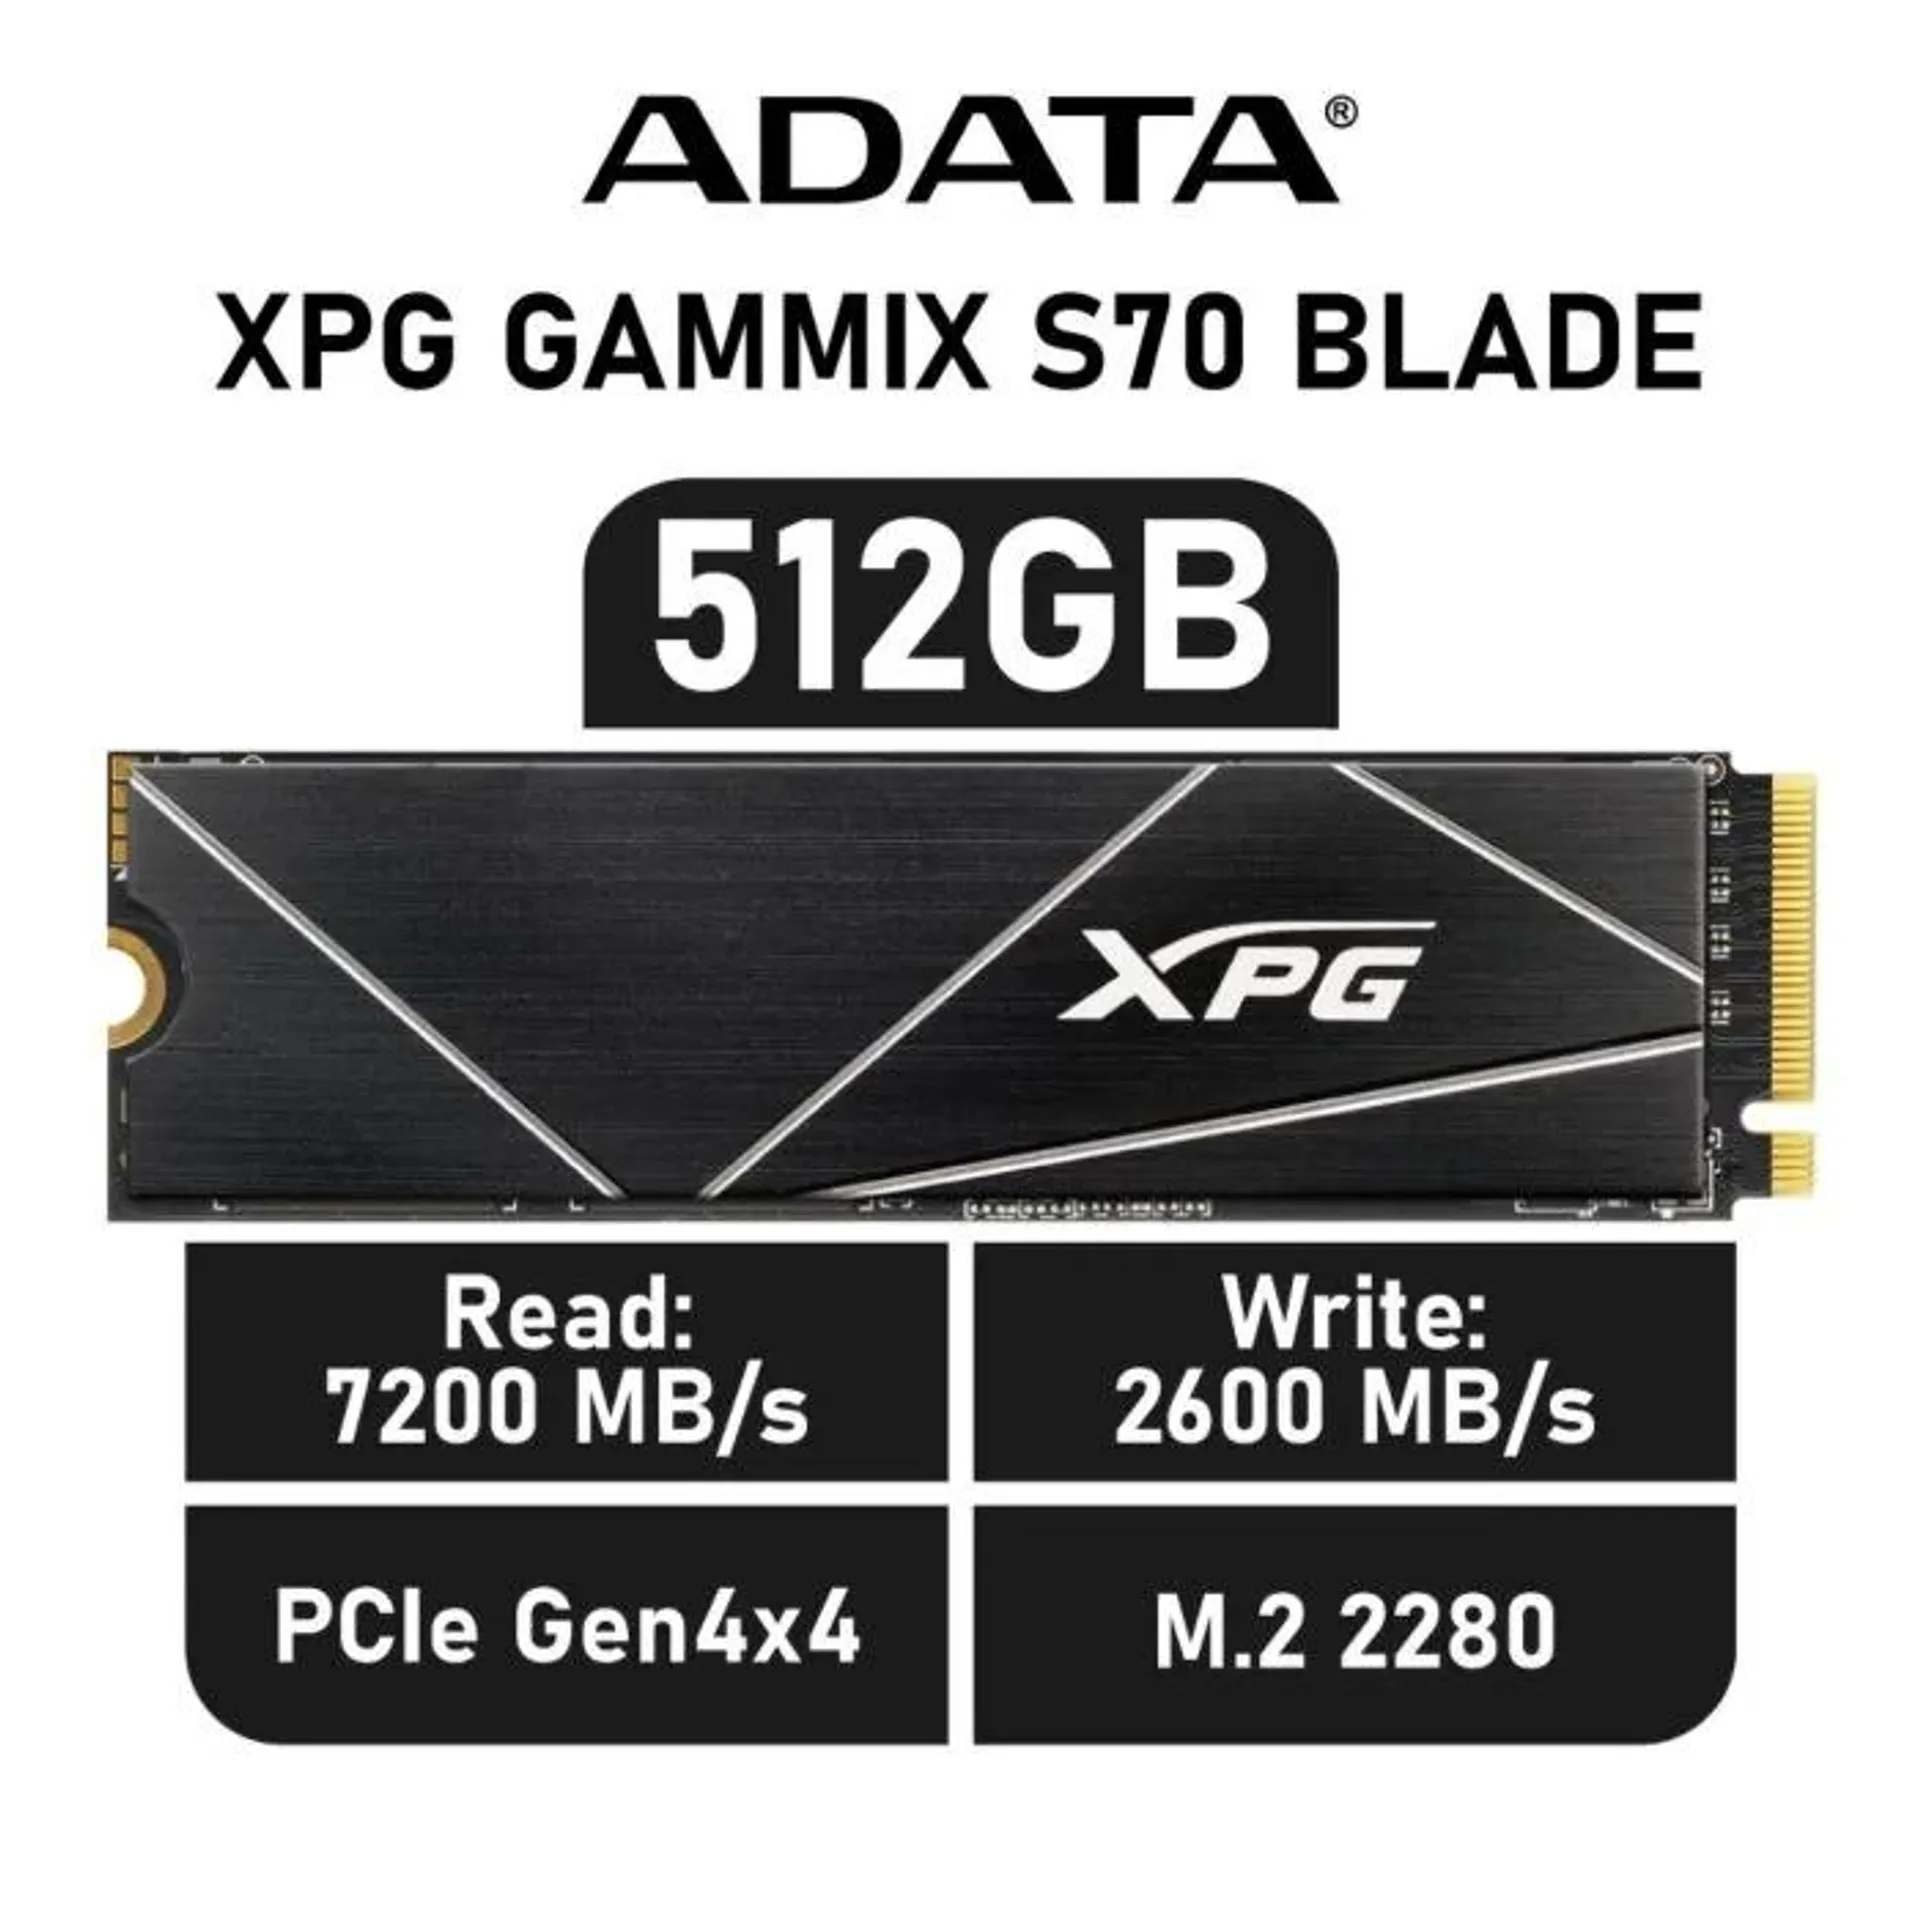 ADATA XPG GAMMIX S70 BLADE 512GB PCIe Gen4x4 AGAMMIXS70B-512G-CS M.2 2280 Solid State Drive